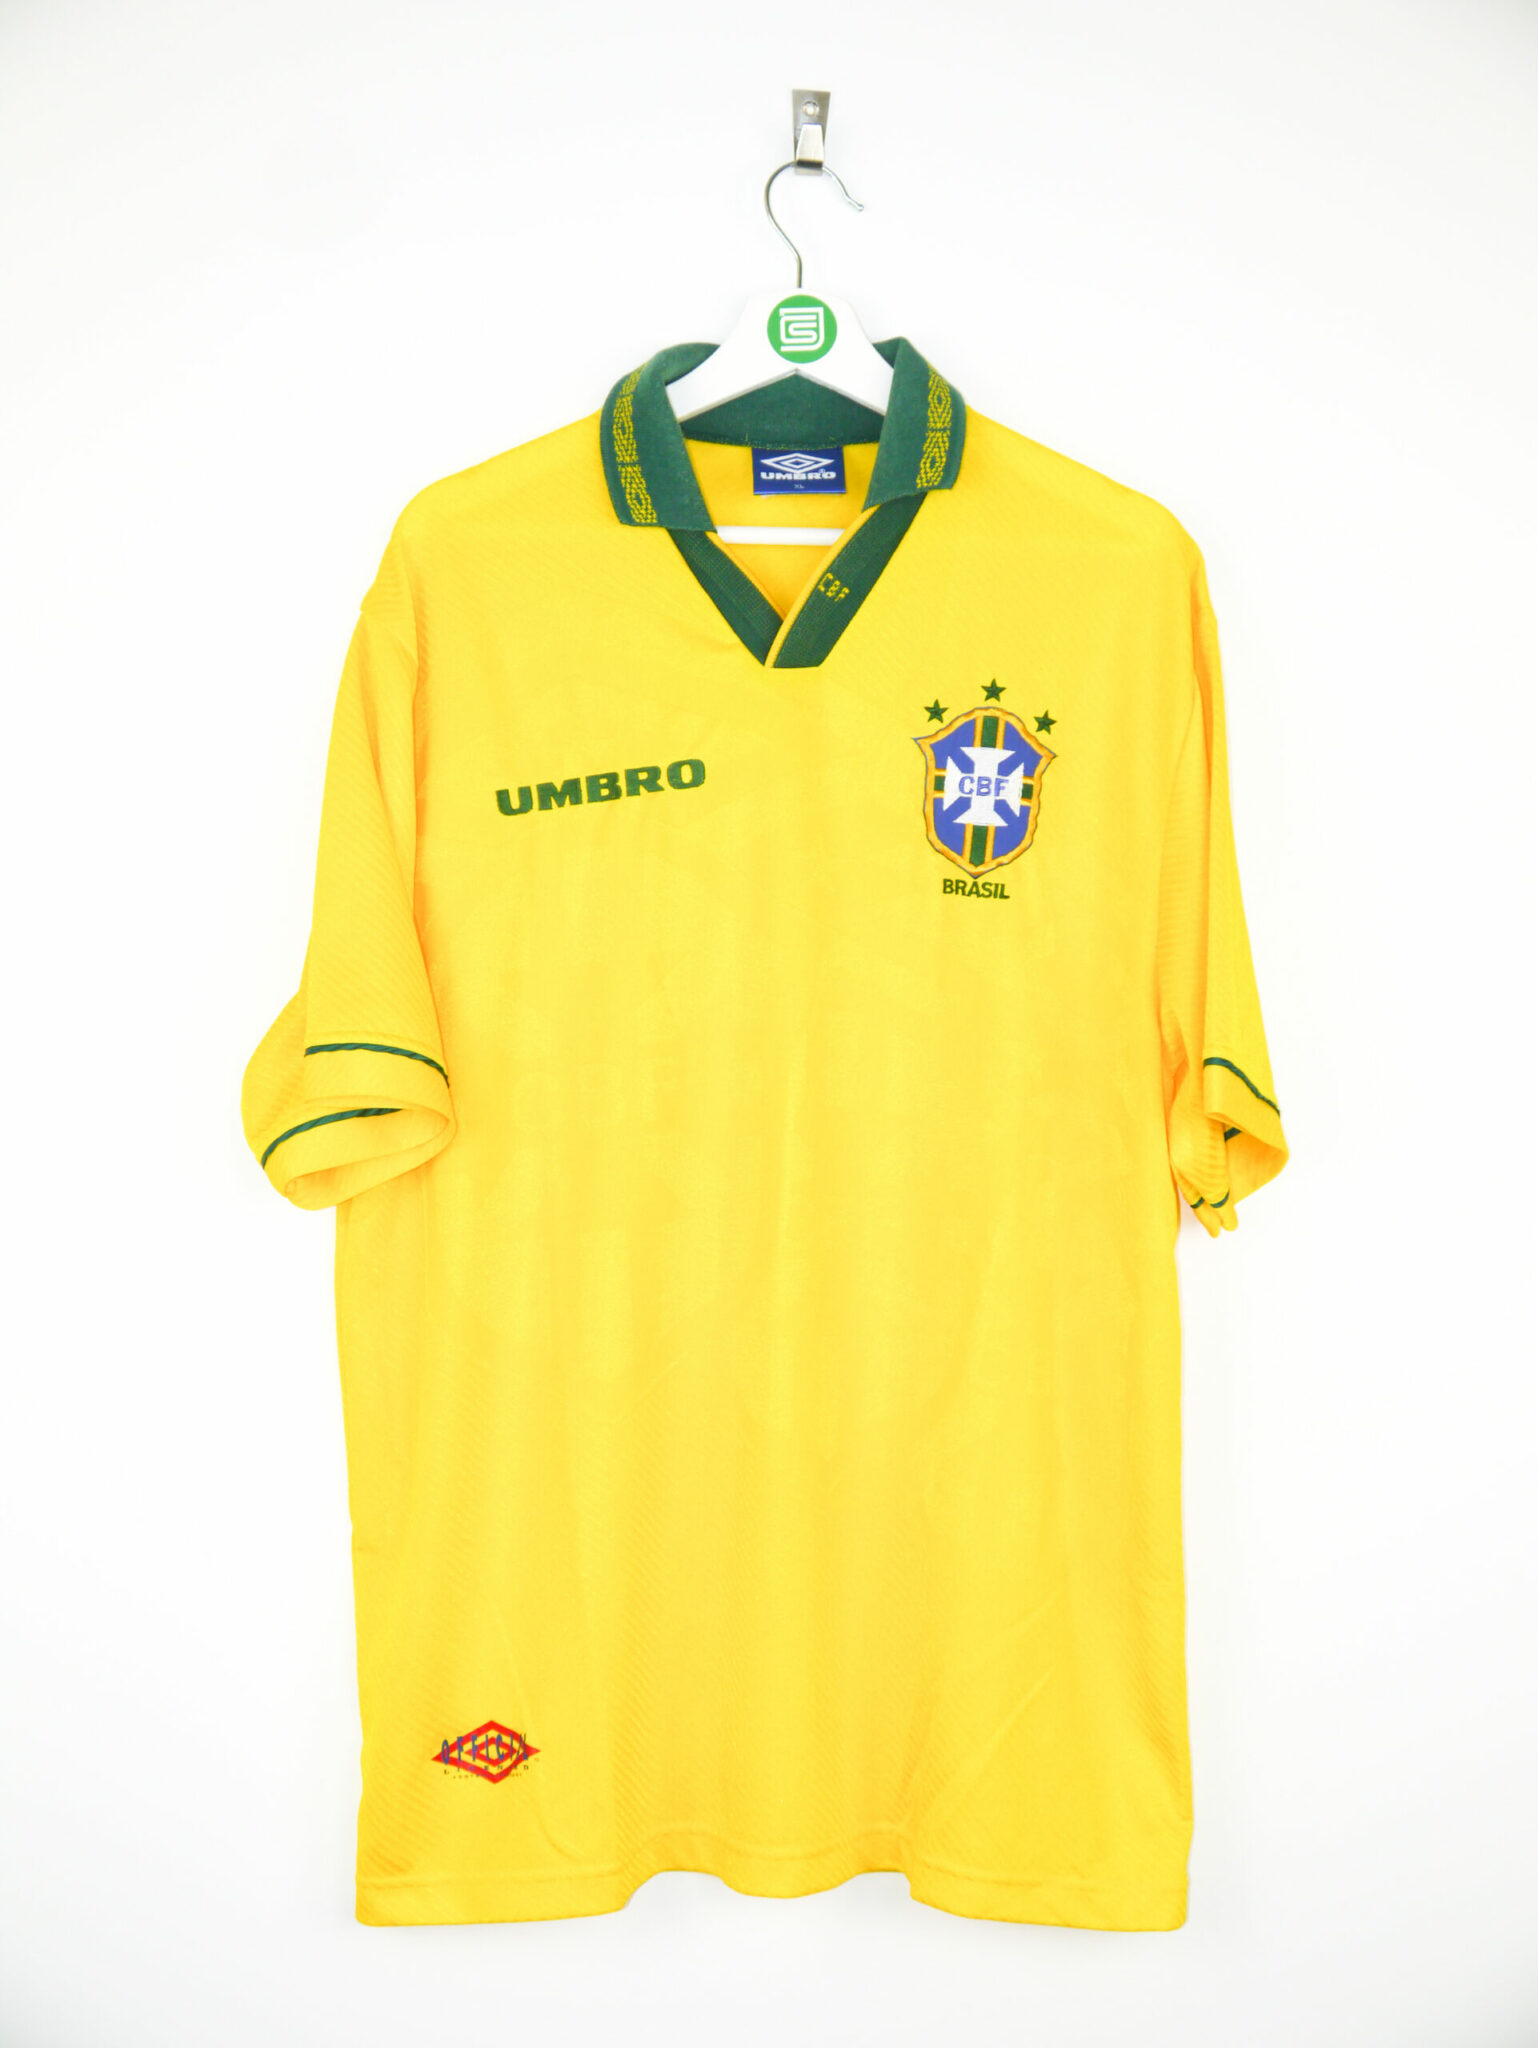 1994 Brazil home jersey - XL